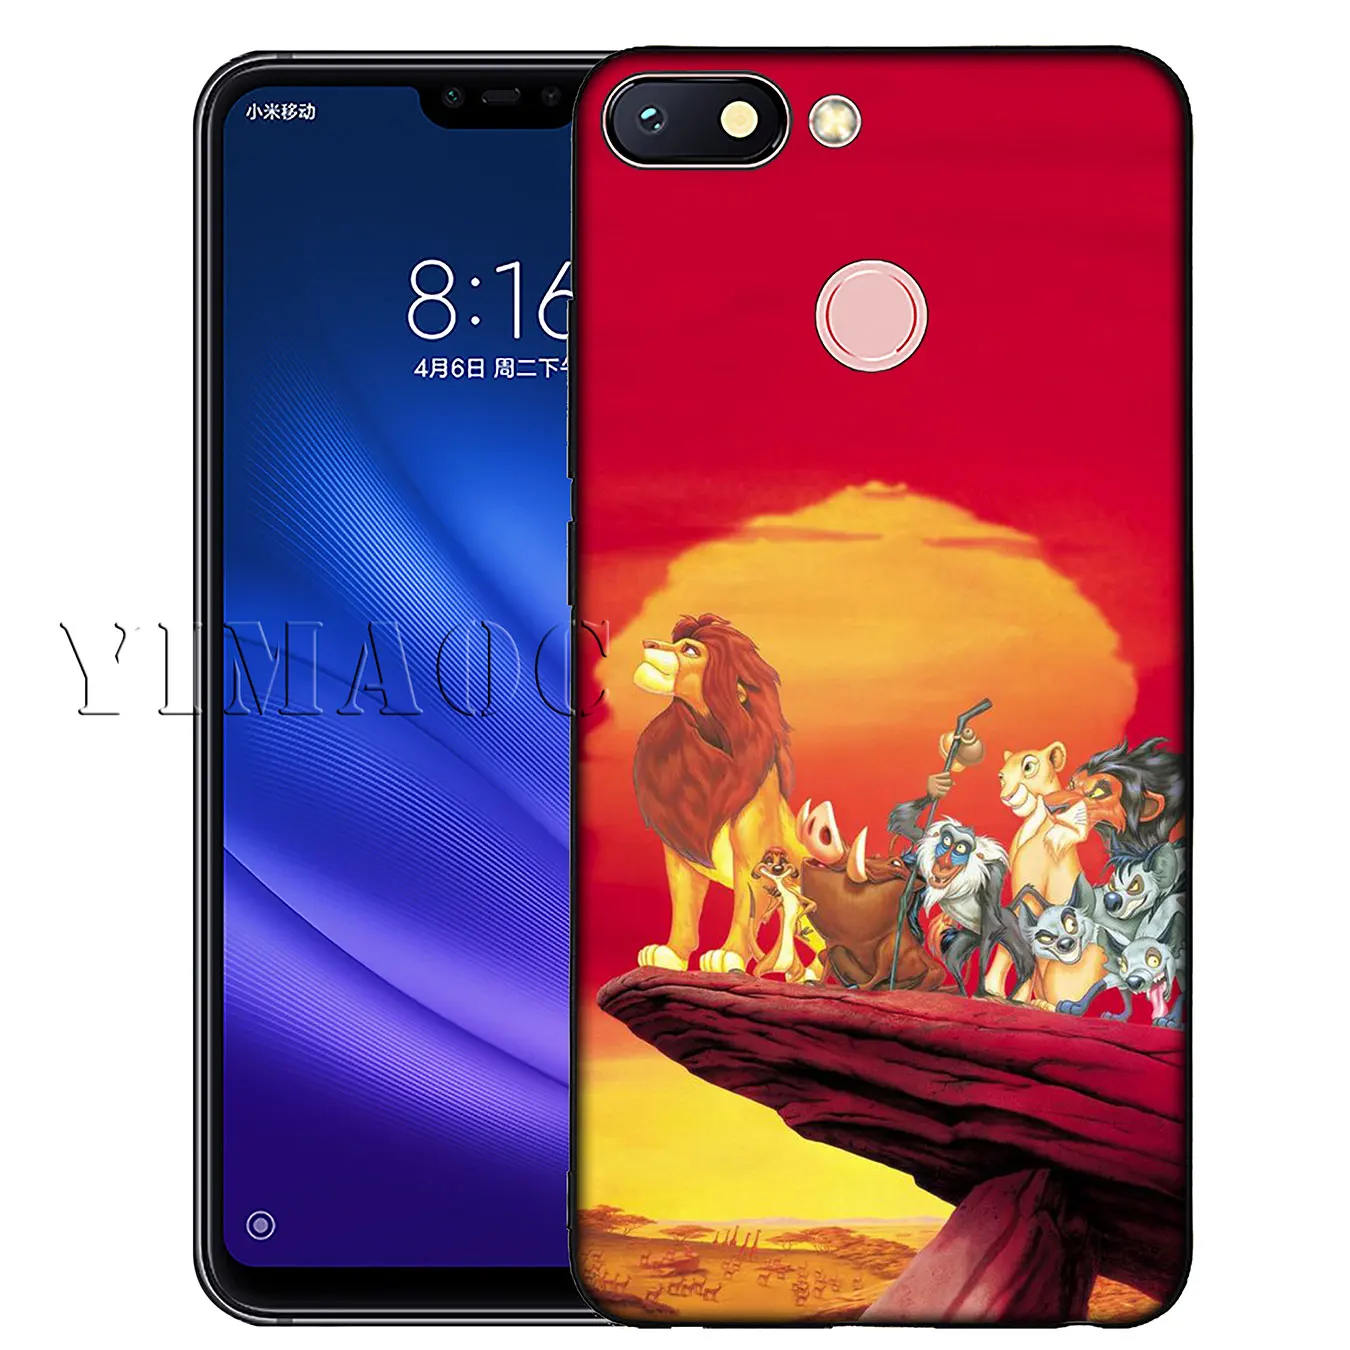 Мягкий силиконовый чехол для телефона YIMAOC с изображением Льва, короля поросенка, кота для Xiaomi Redmi K20 6A 7A Note 8 7 5 6 Pro Plus, черный чехол из ТПУ - Цвет: 1